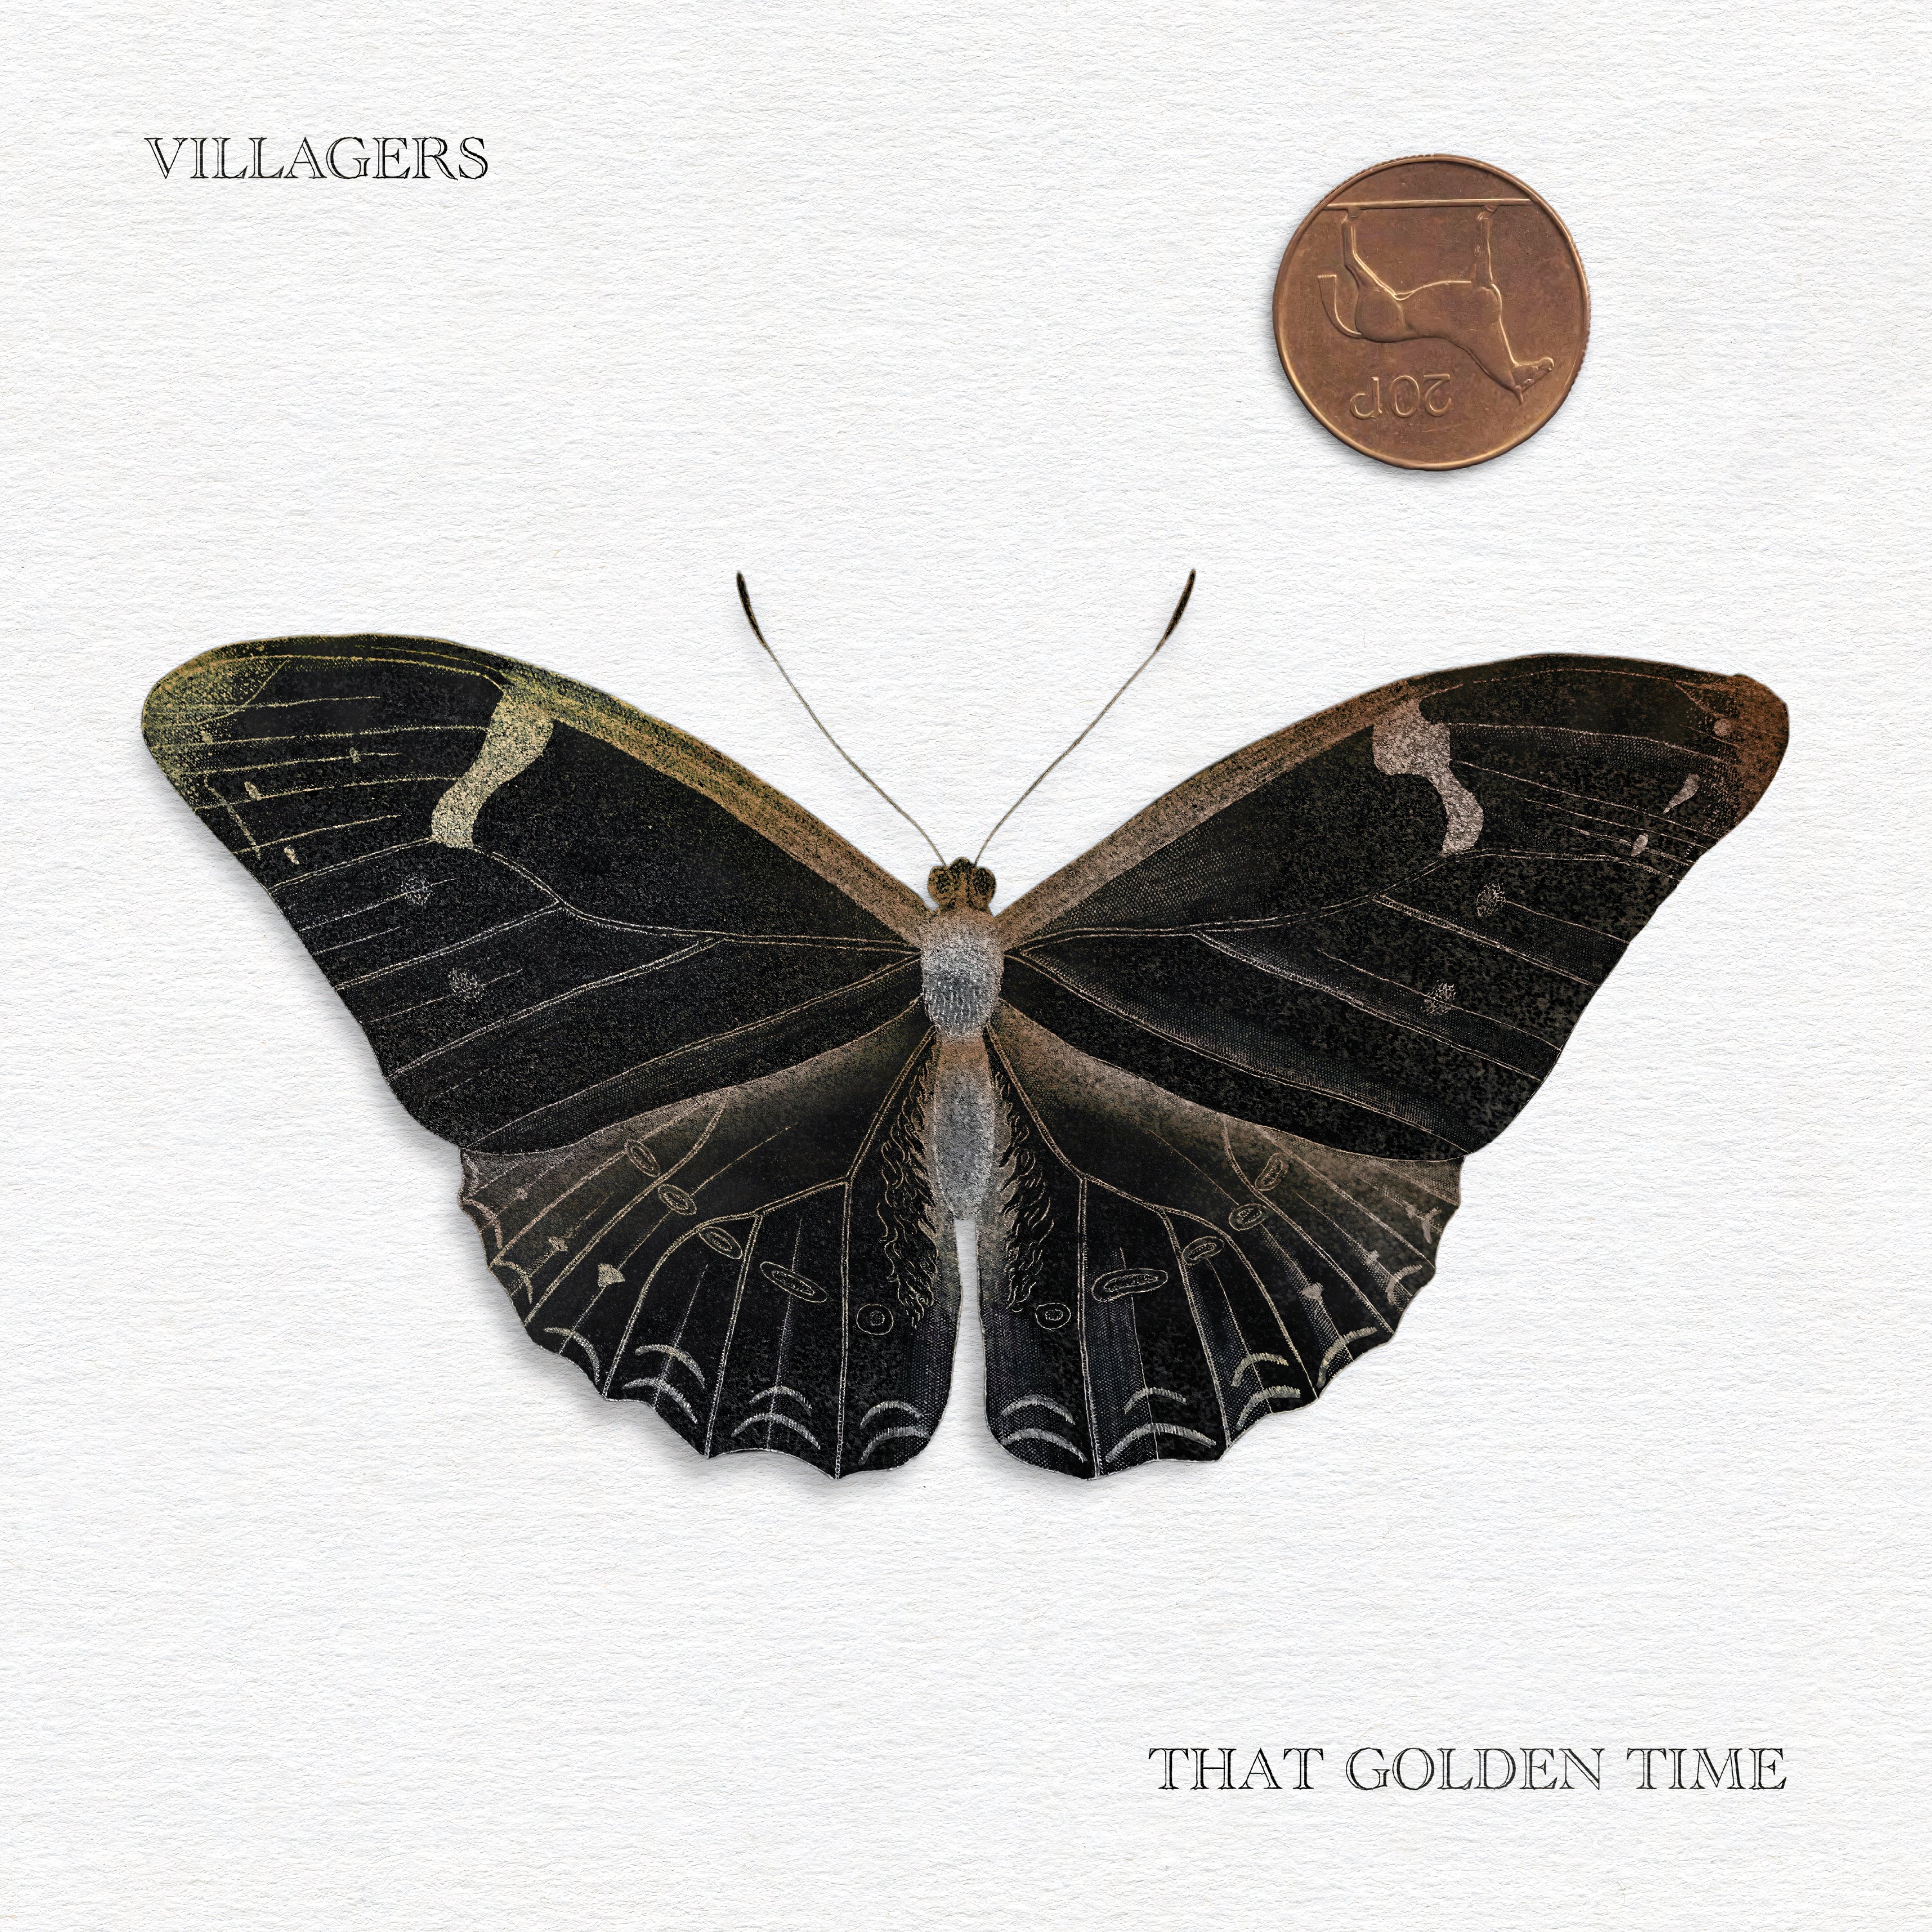 Villagers - That Golden Time LP LTD Indies Exclusive Gold Vinyl